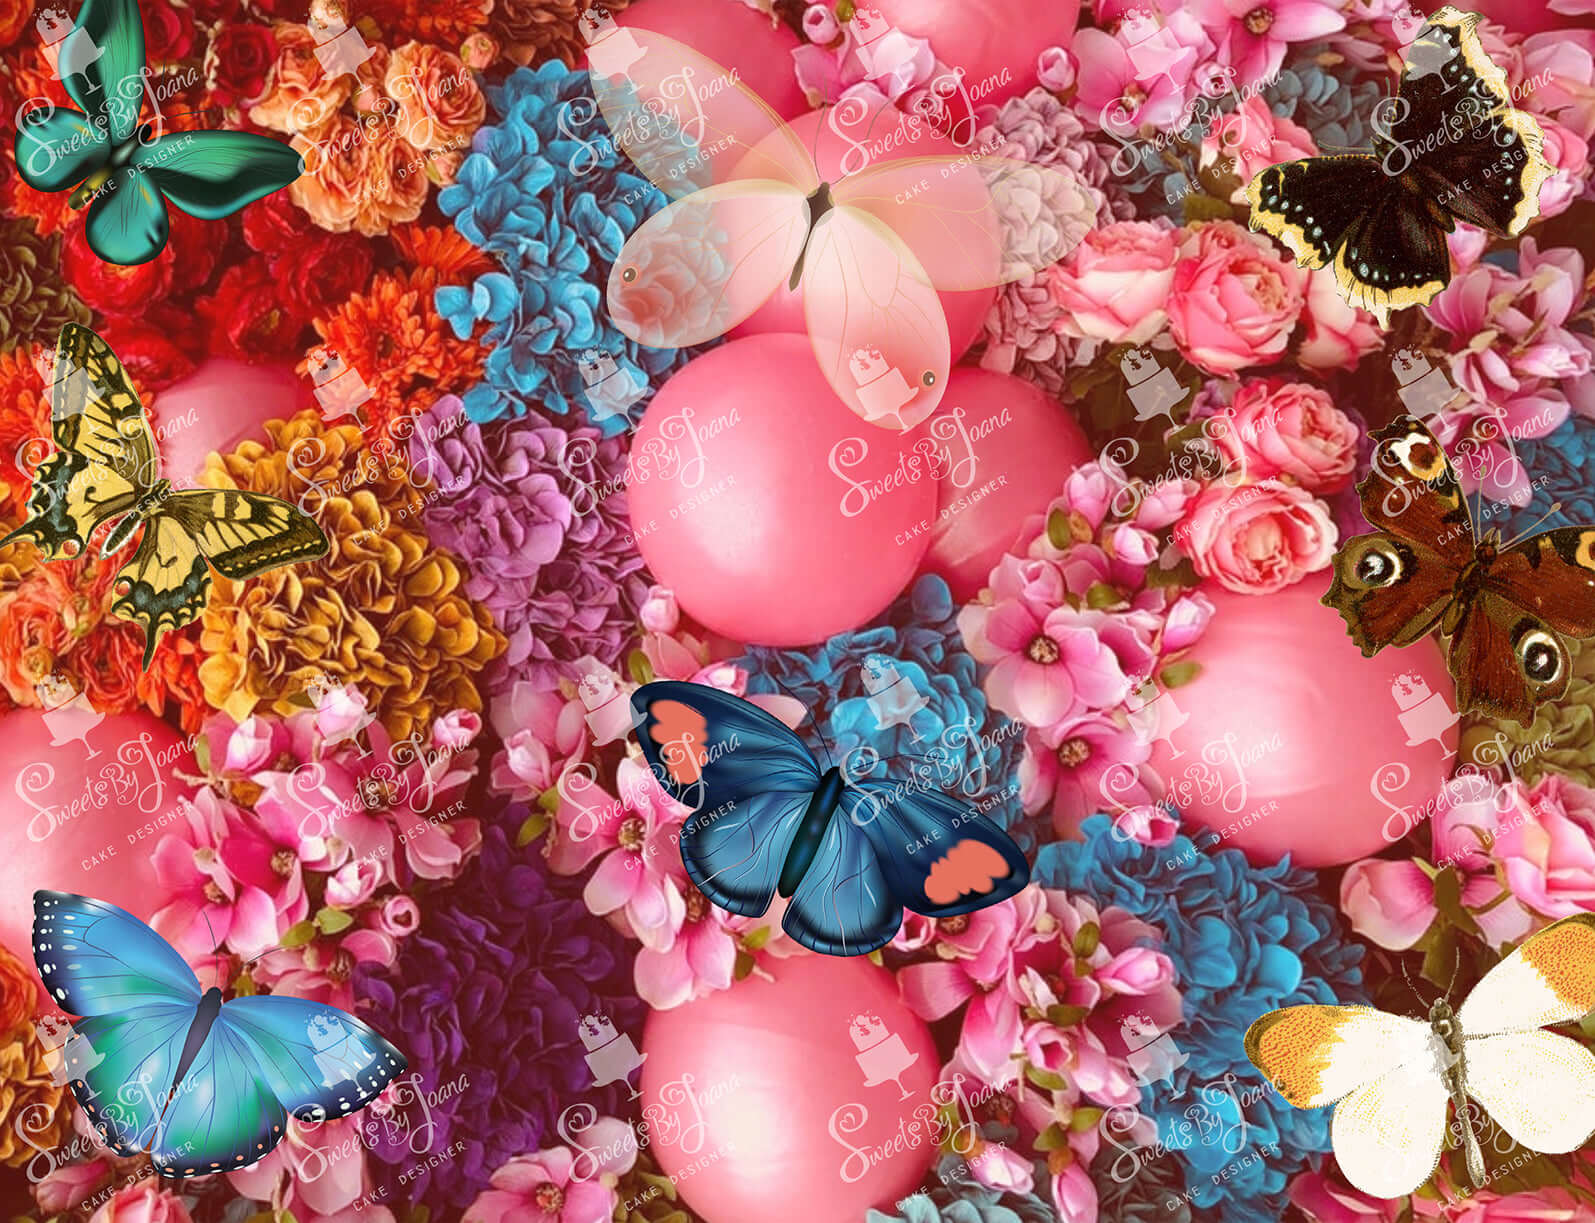 Pink Flowers and Butterflies - SJSA028